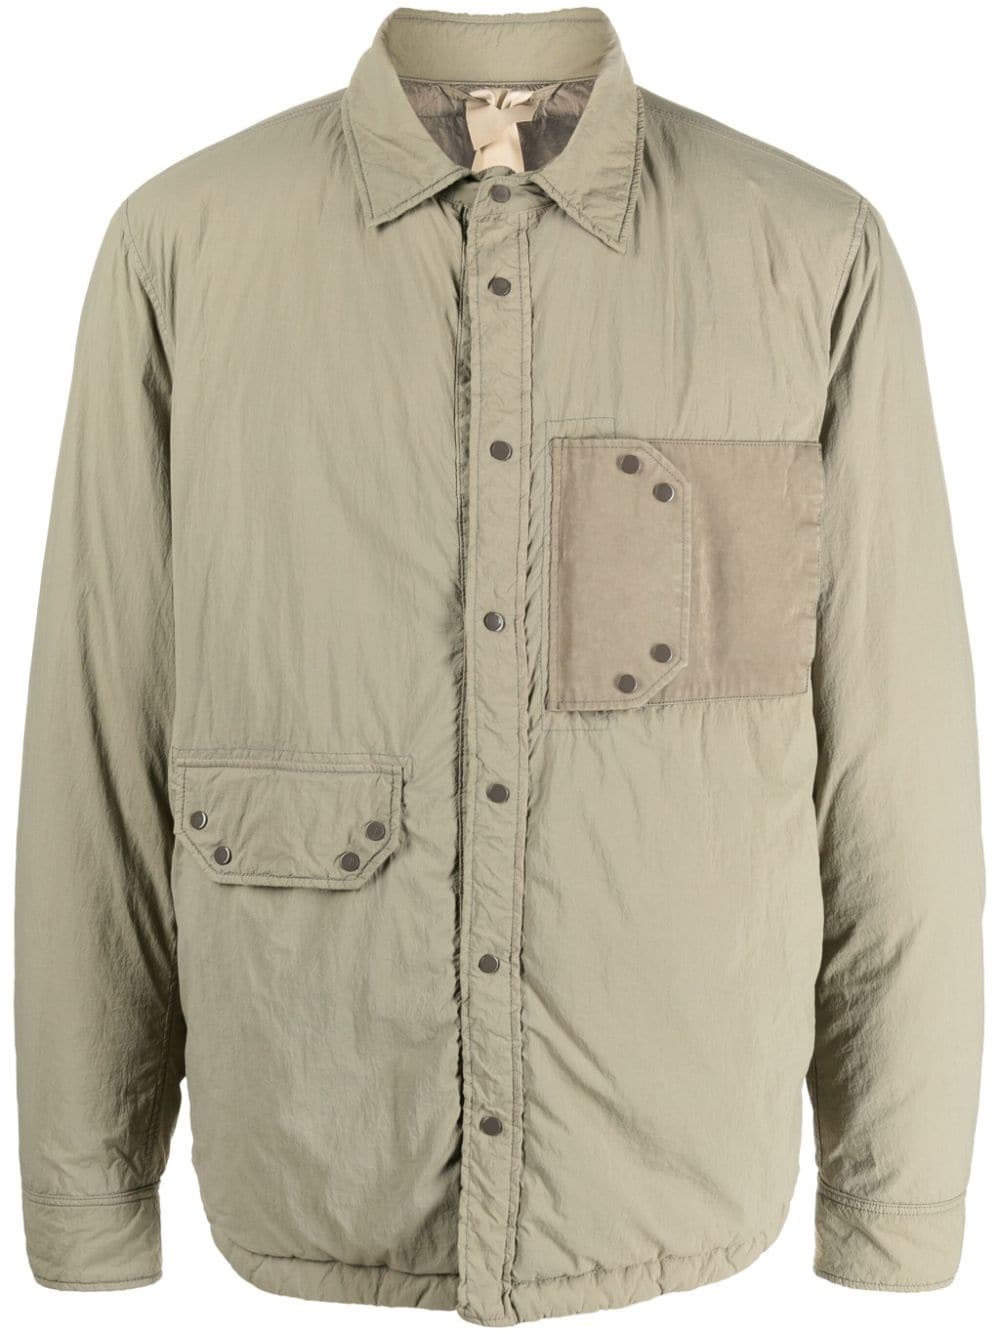 padded shirt jacket - 1